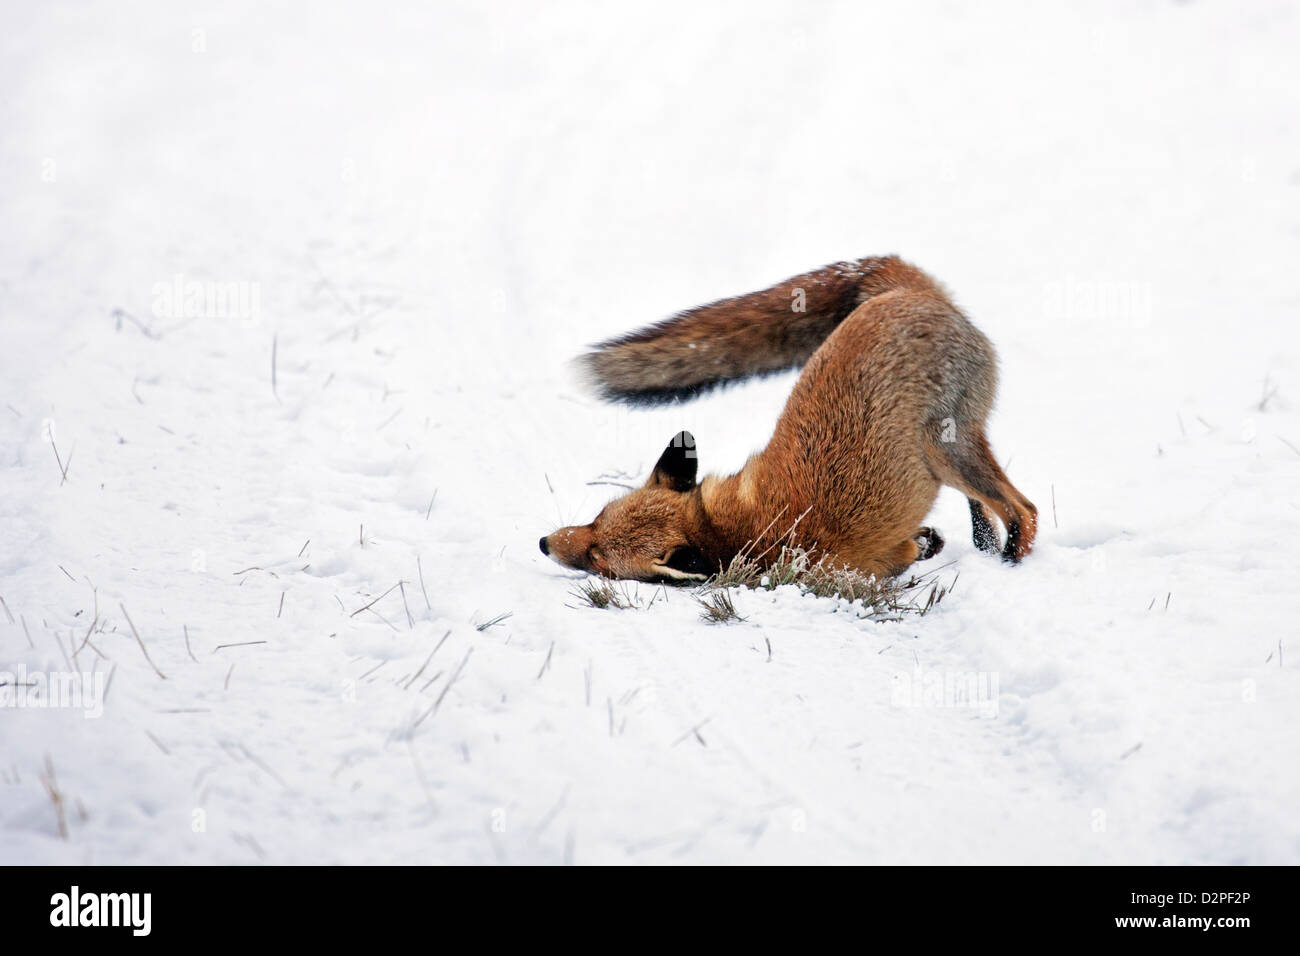 Le renard roux (Vulpes vulpes) marque territoire en frottant des glandes odoriférantes dans la neige en hiver Banque D'Images